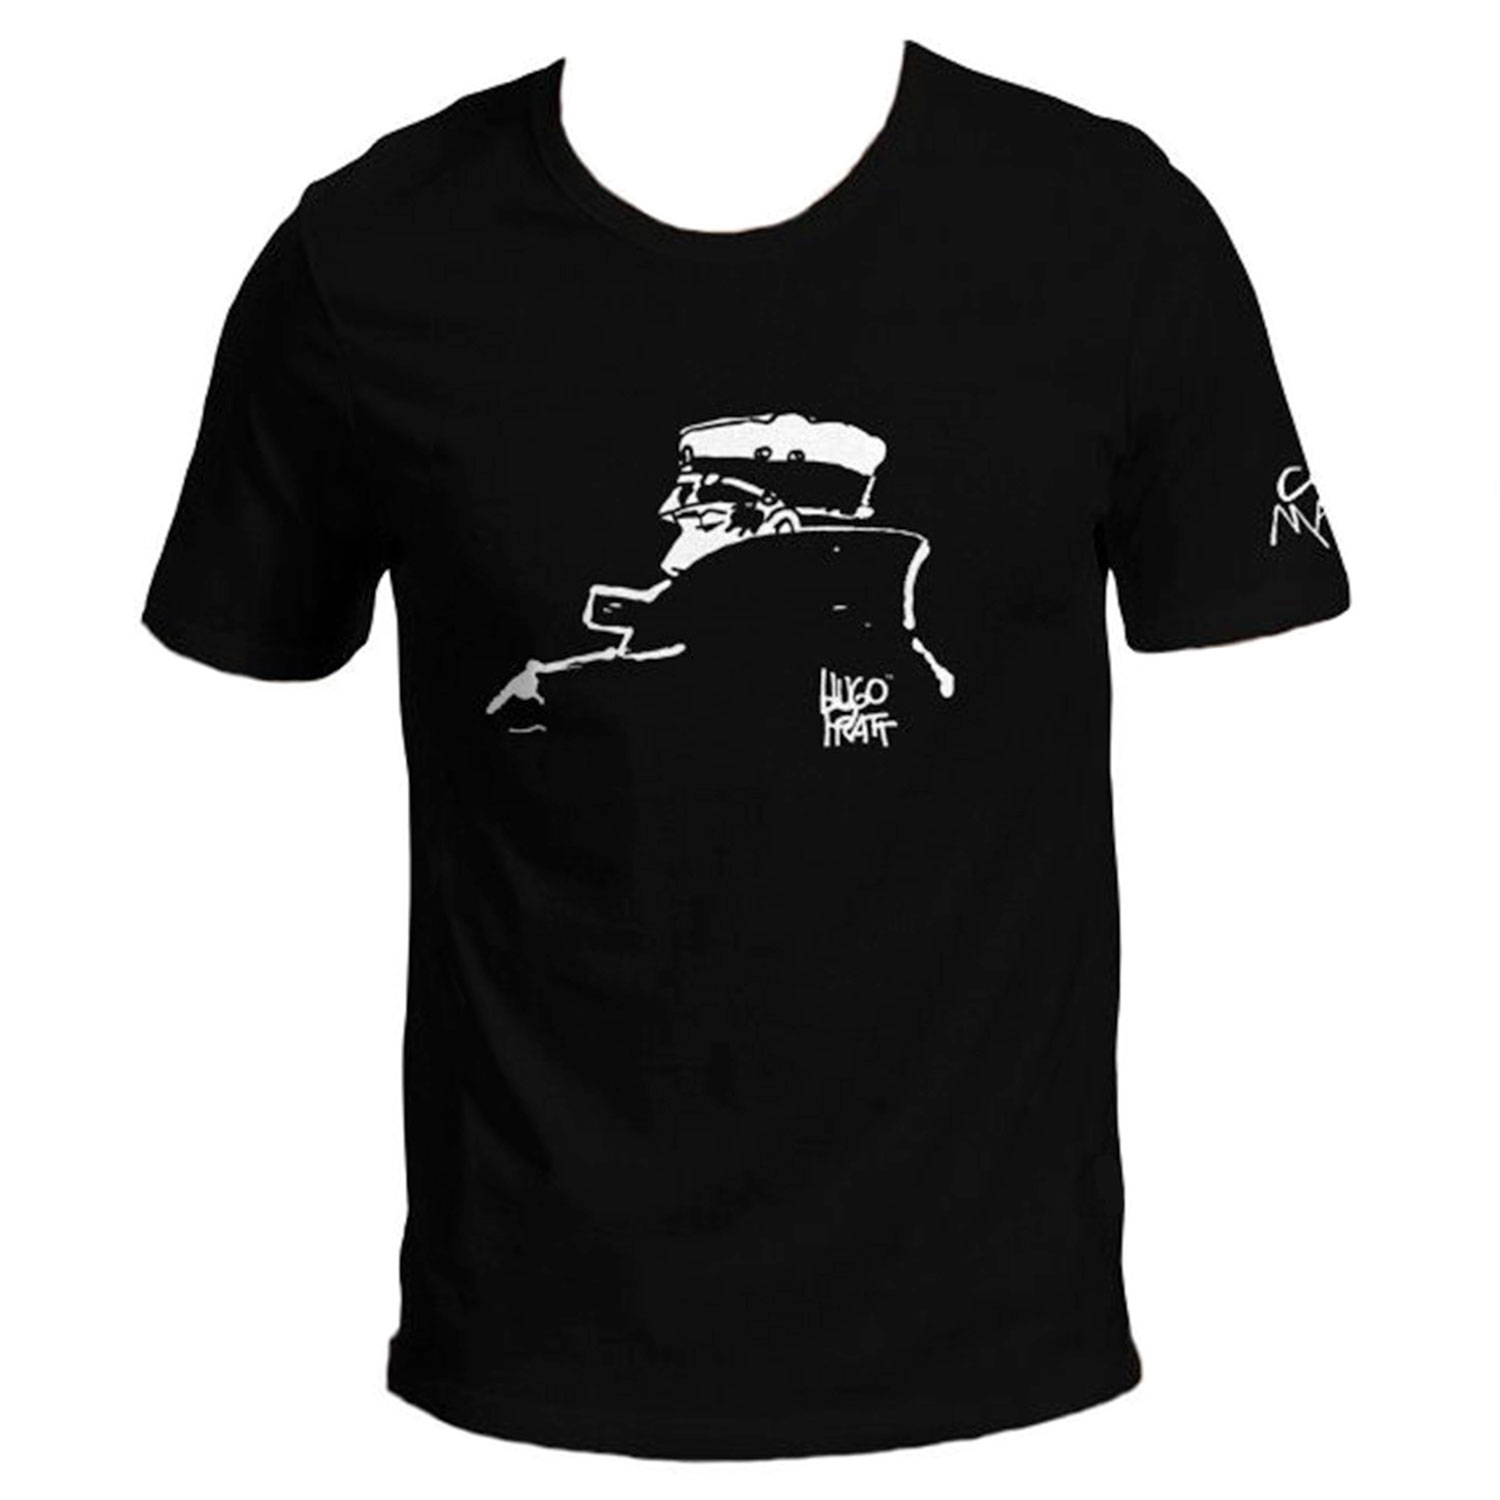 T-shirt Hugo Pratt : Corto Maltese , Notturno - Nero - Taglia S